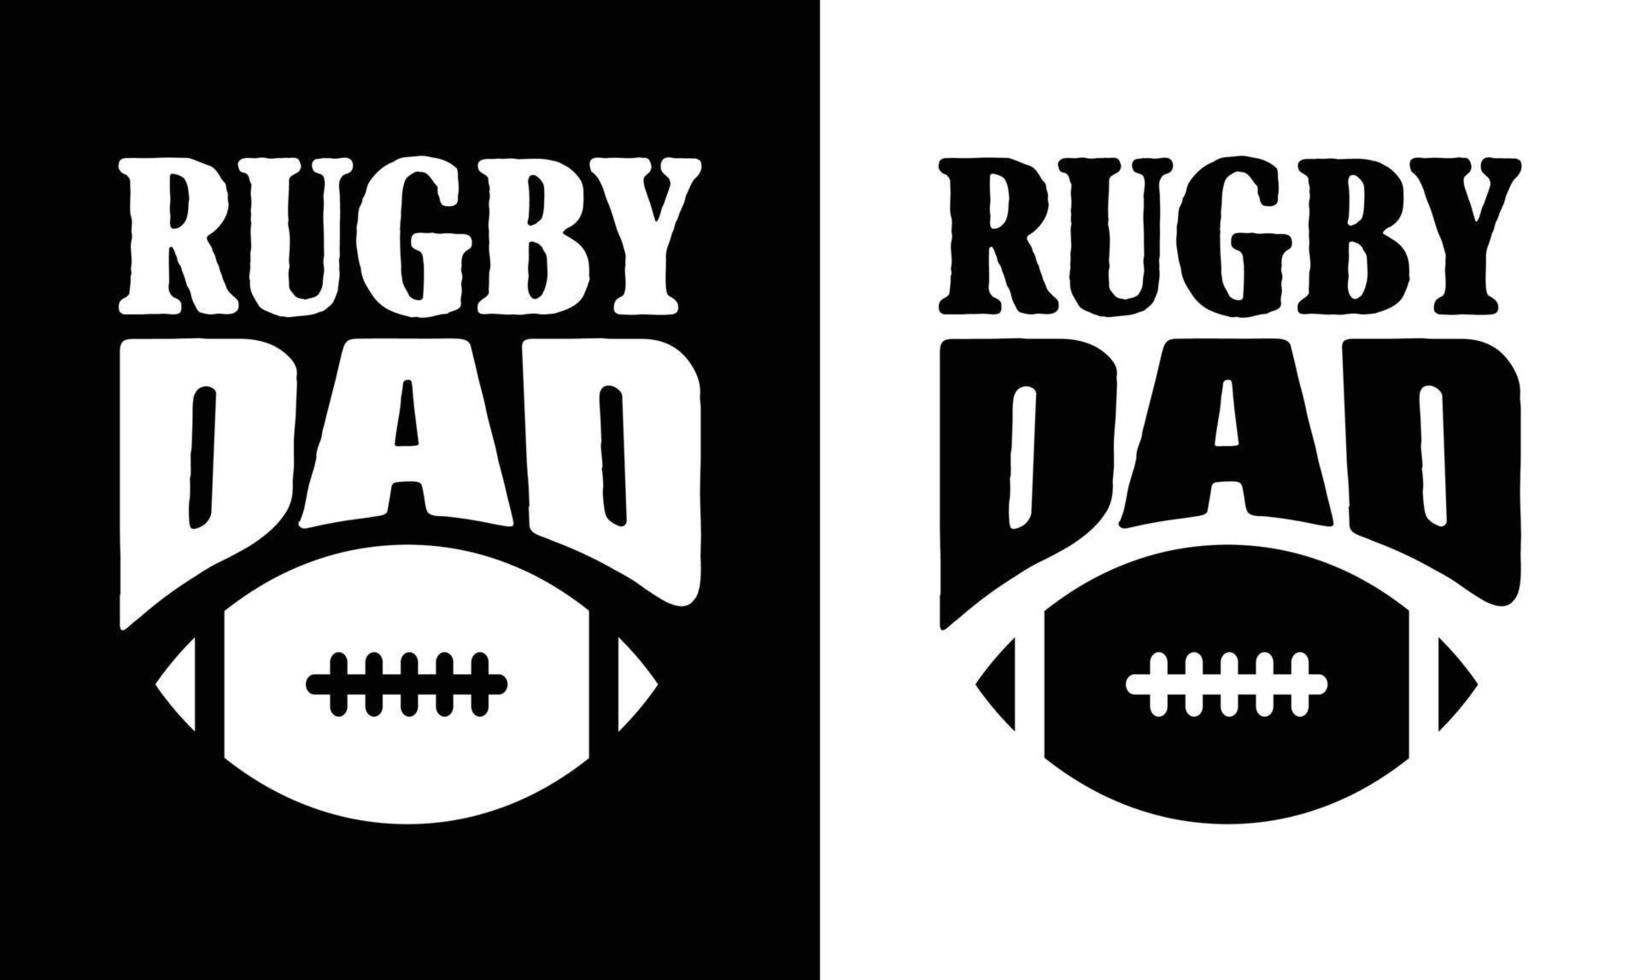 Amerikaans Amerikaans voetbal t overhemd ontwerp, rugby t overhemd ontwerp vector